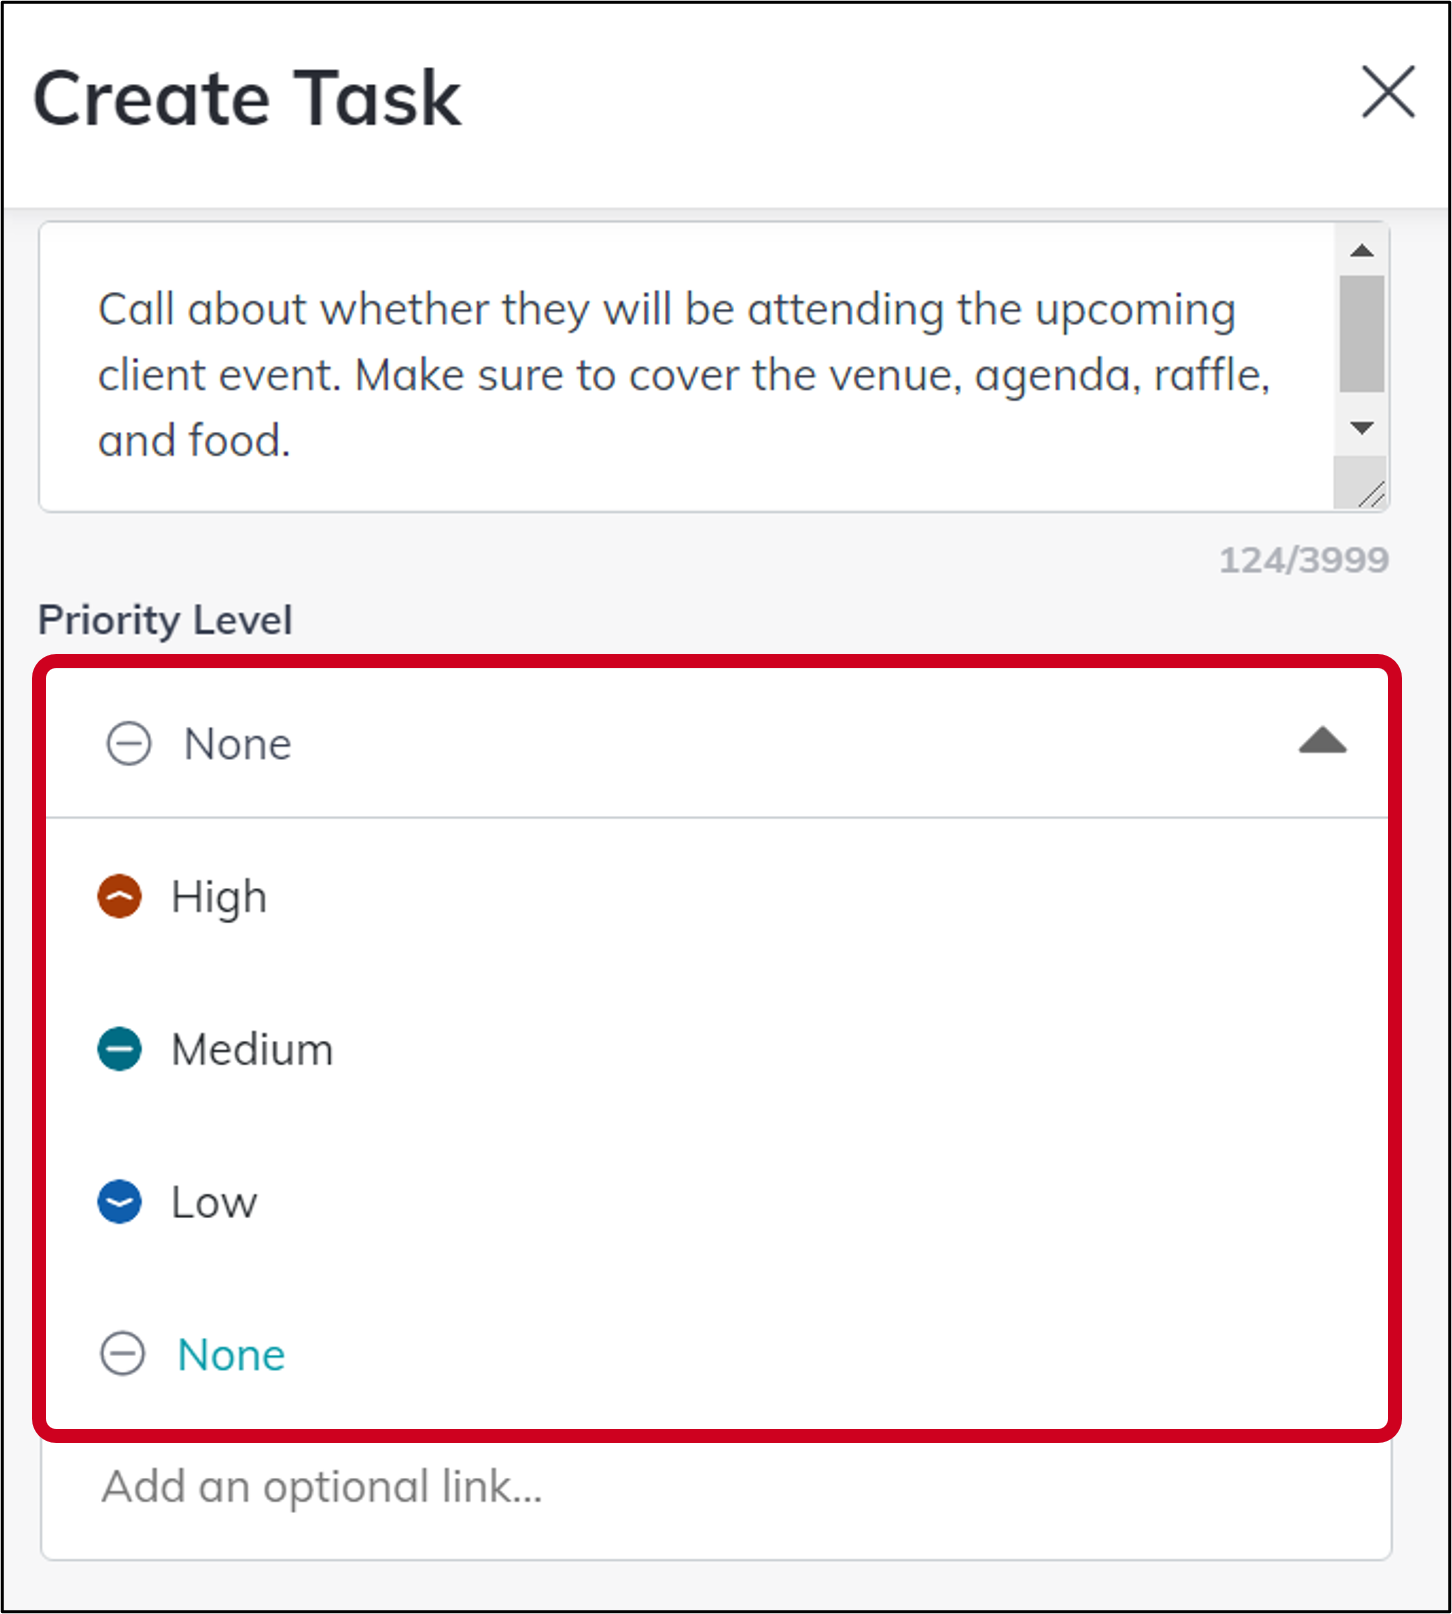 tasks_create_task_priority.png